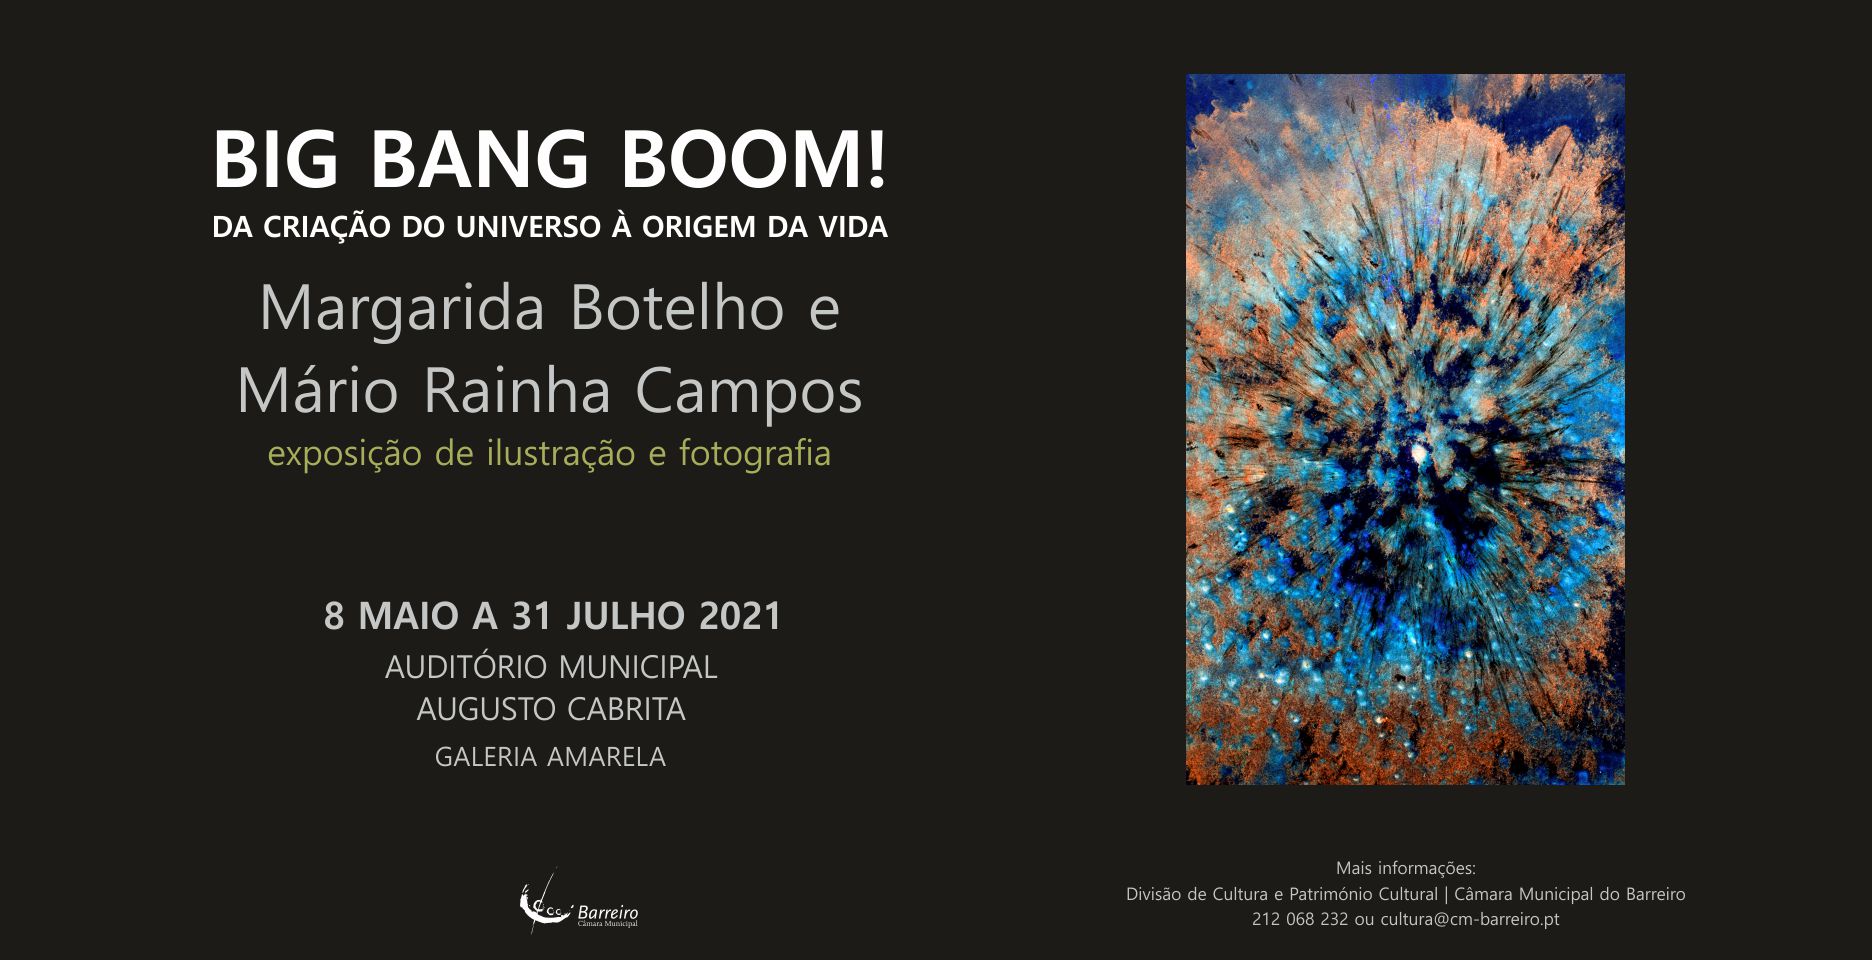 Big Bang Boom!  Exposição de ilustração e fotografia de Margarida Botelho e Mário Rainha Campos